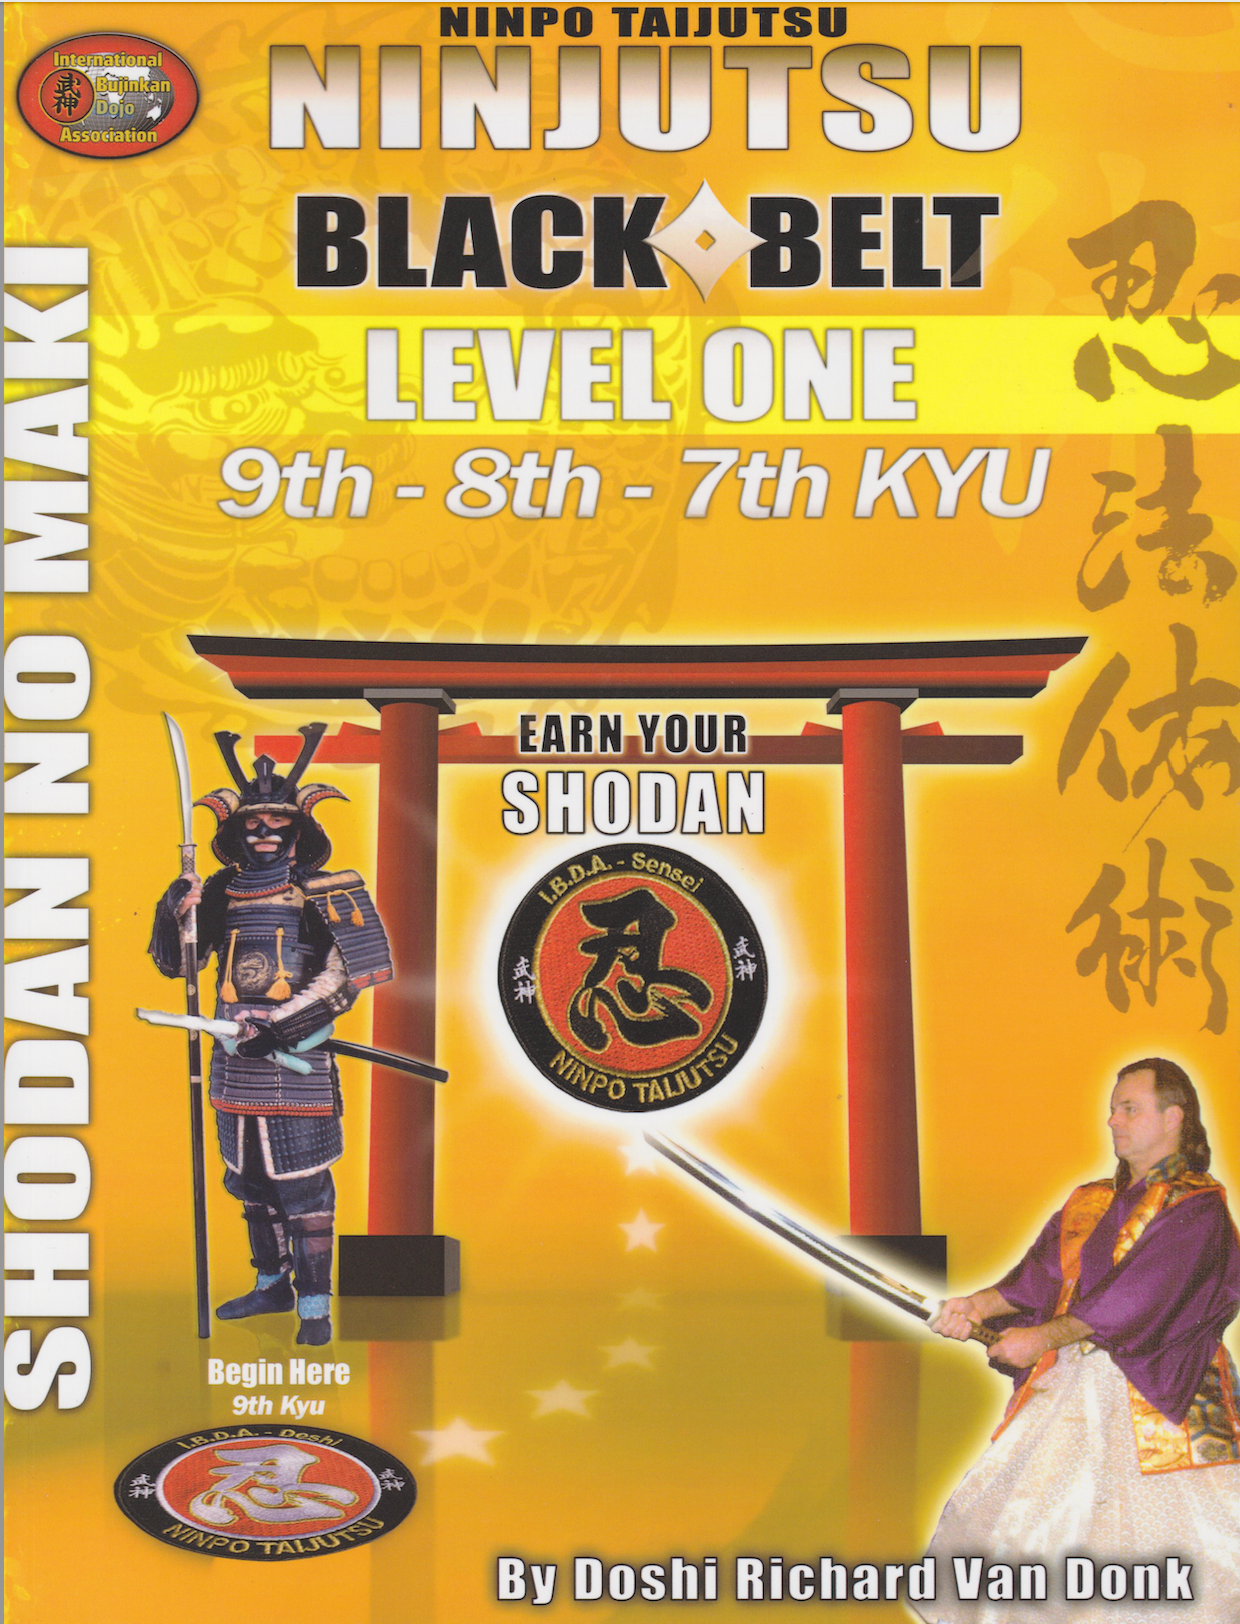 Ninjutsu Shodan Level 1 Book by Richard Van Donk